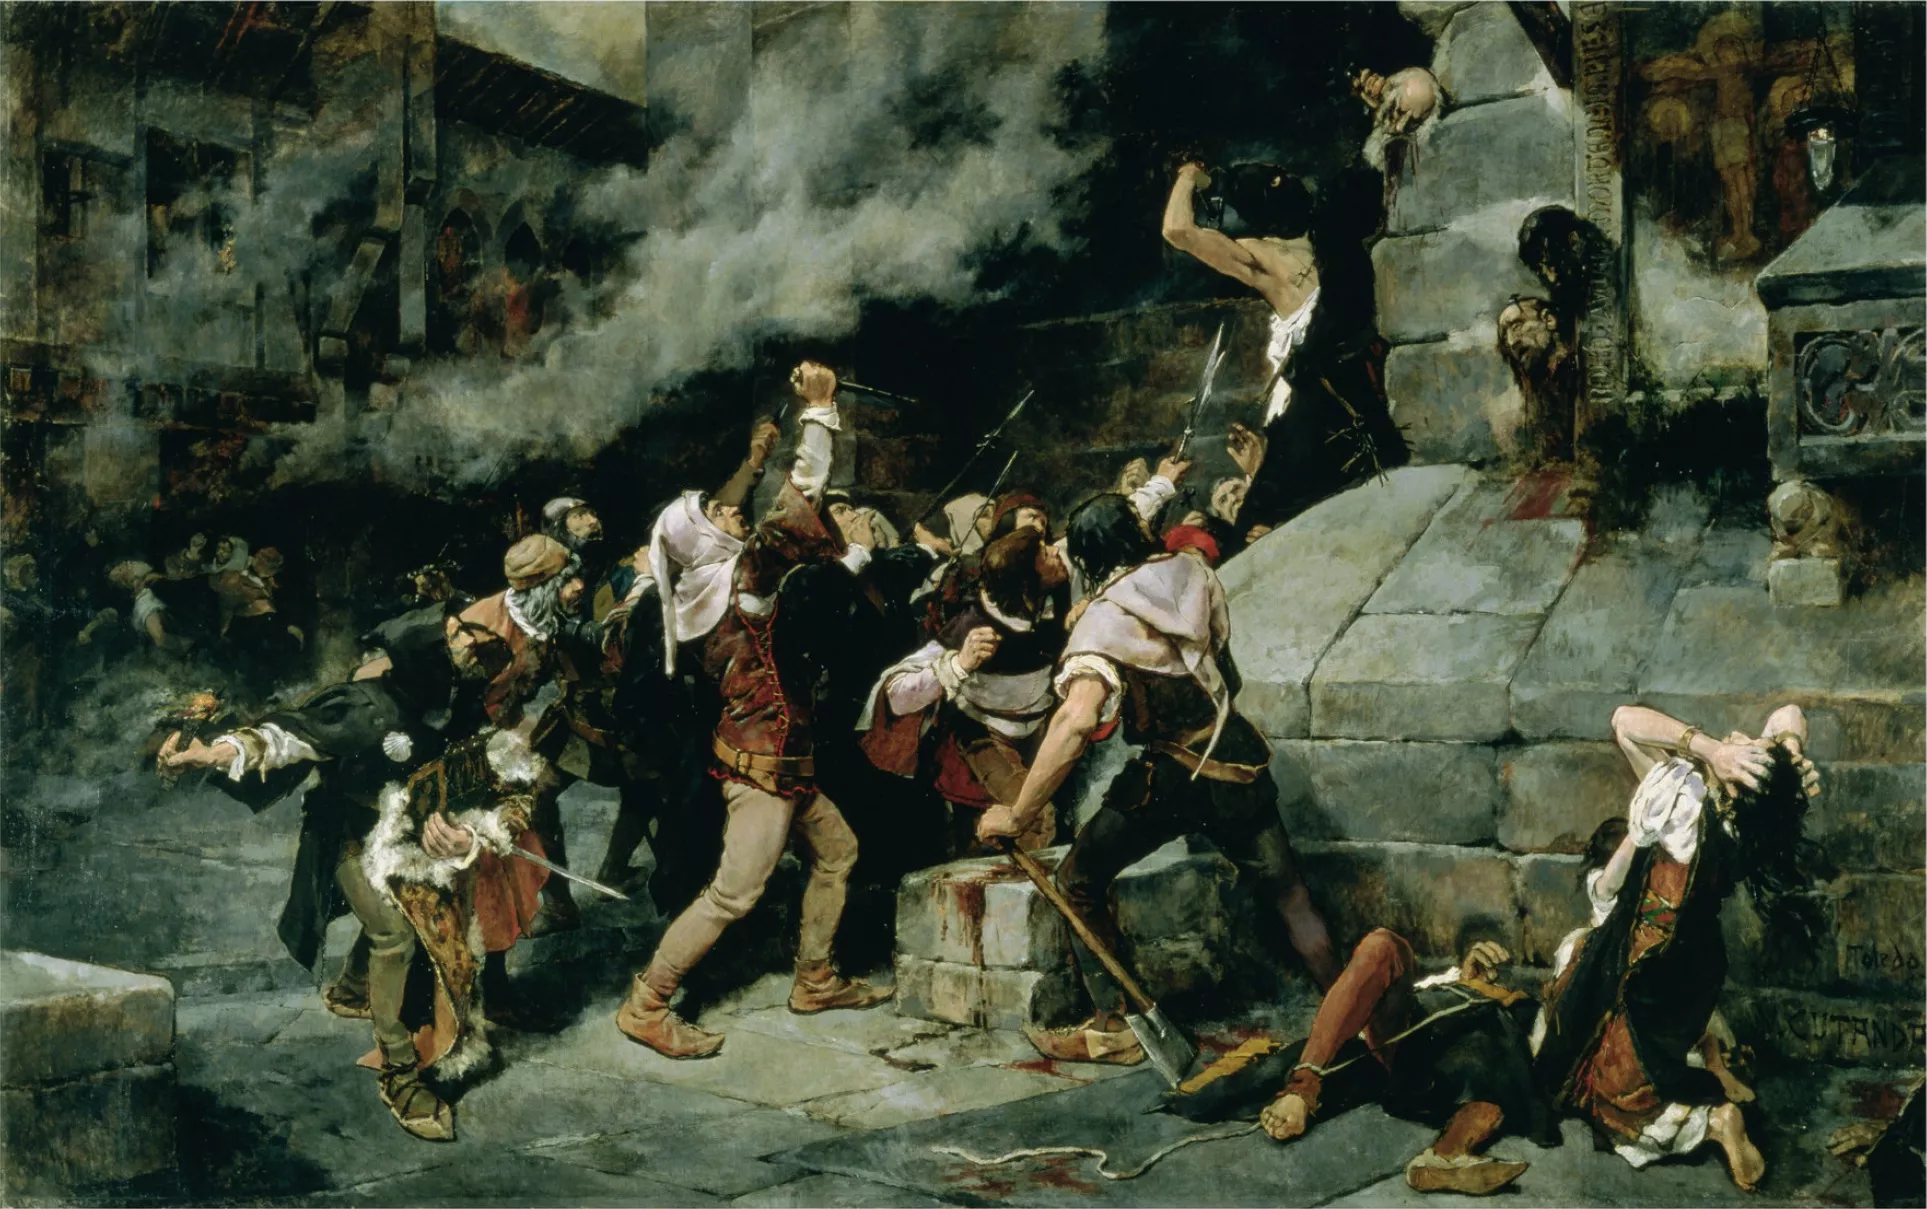 El quadre de Vicente Cutanda 'Als peus del Salvador' (1887) recrea una matança de jueus en temps medievals